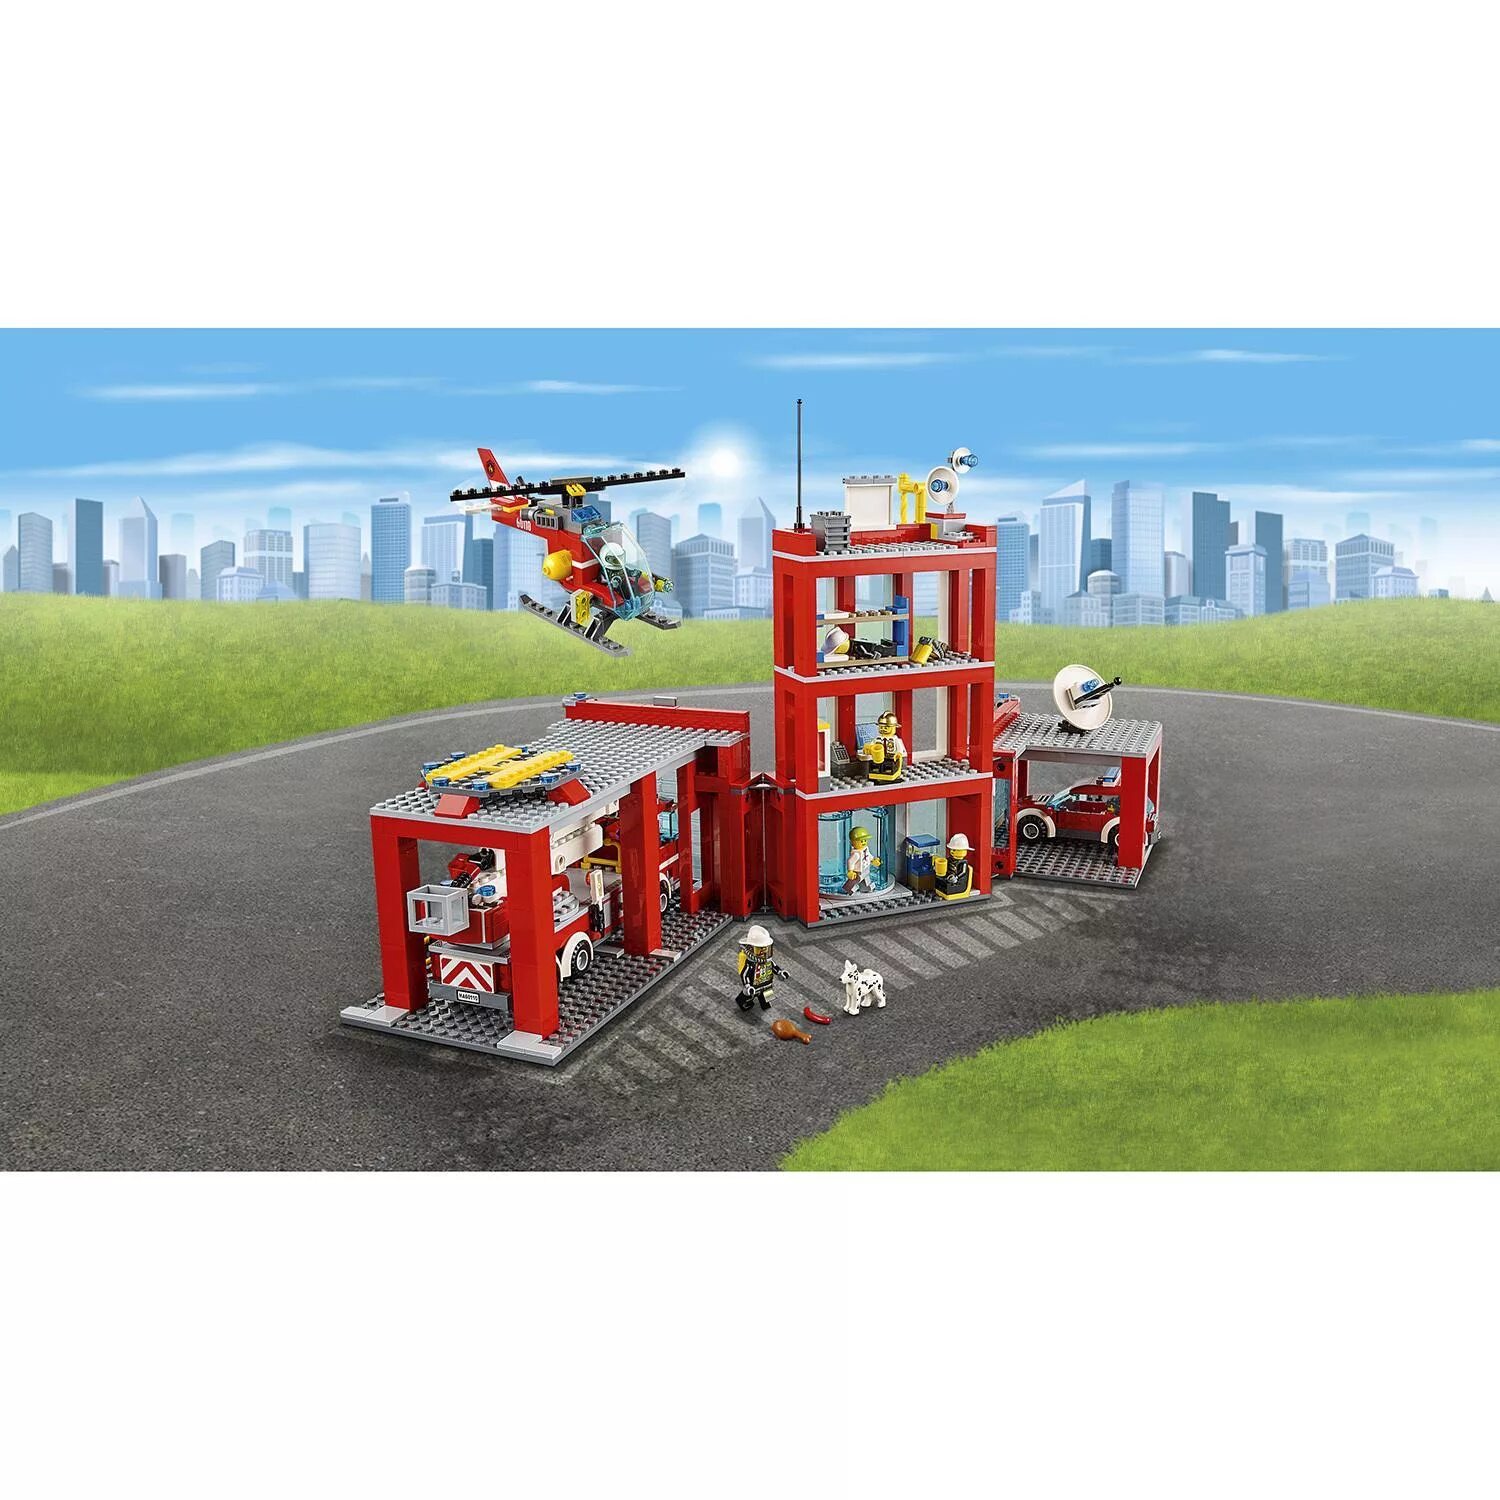 LEGO City пожарная станция 60110. LEGO City пожарная часть 60110. Лего Сити пожарная станция 60110. LEGO City Fire пожарная часть (60110). Сити пожарная